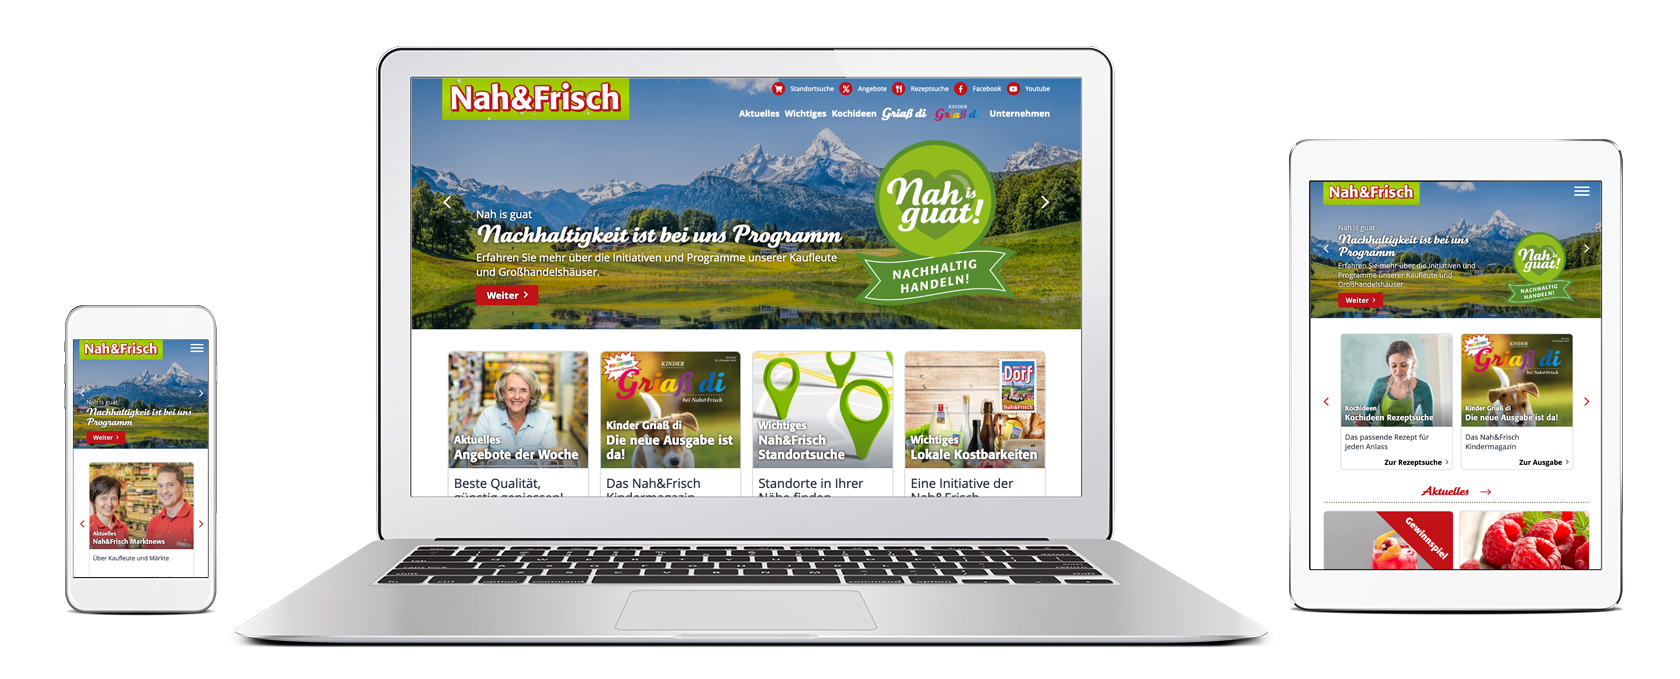 Nah&Frisch Website